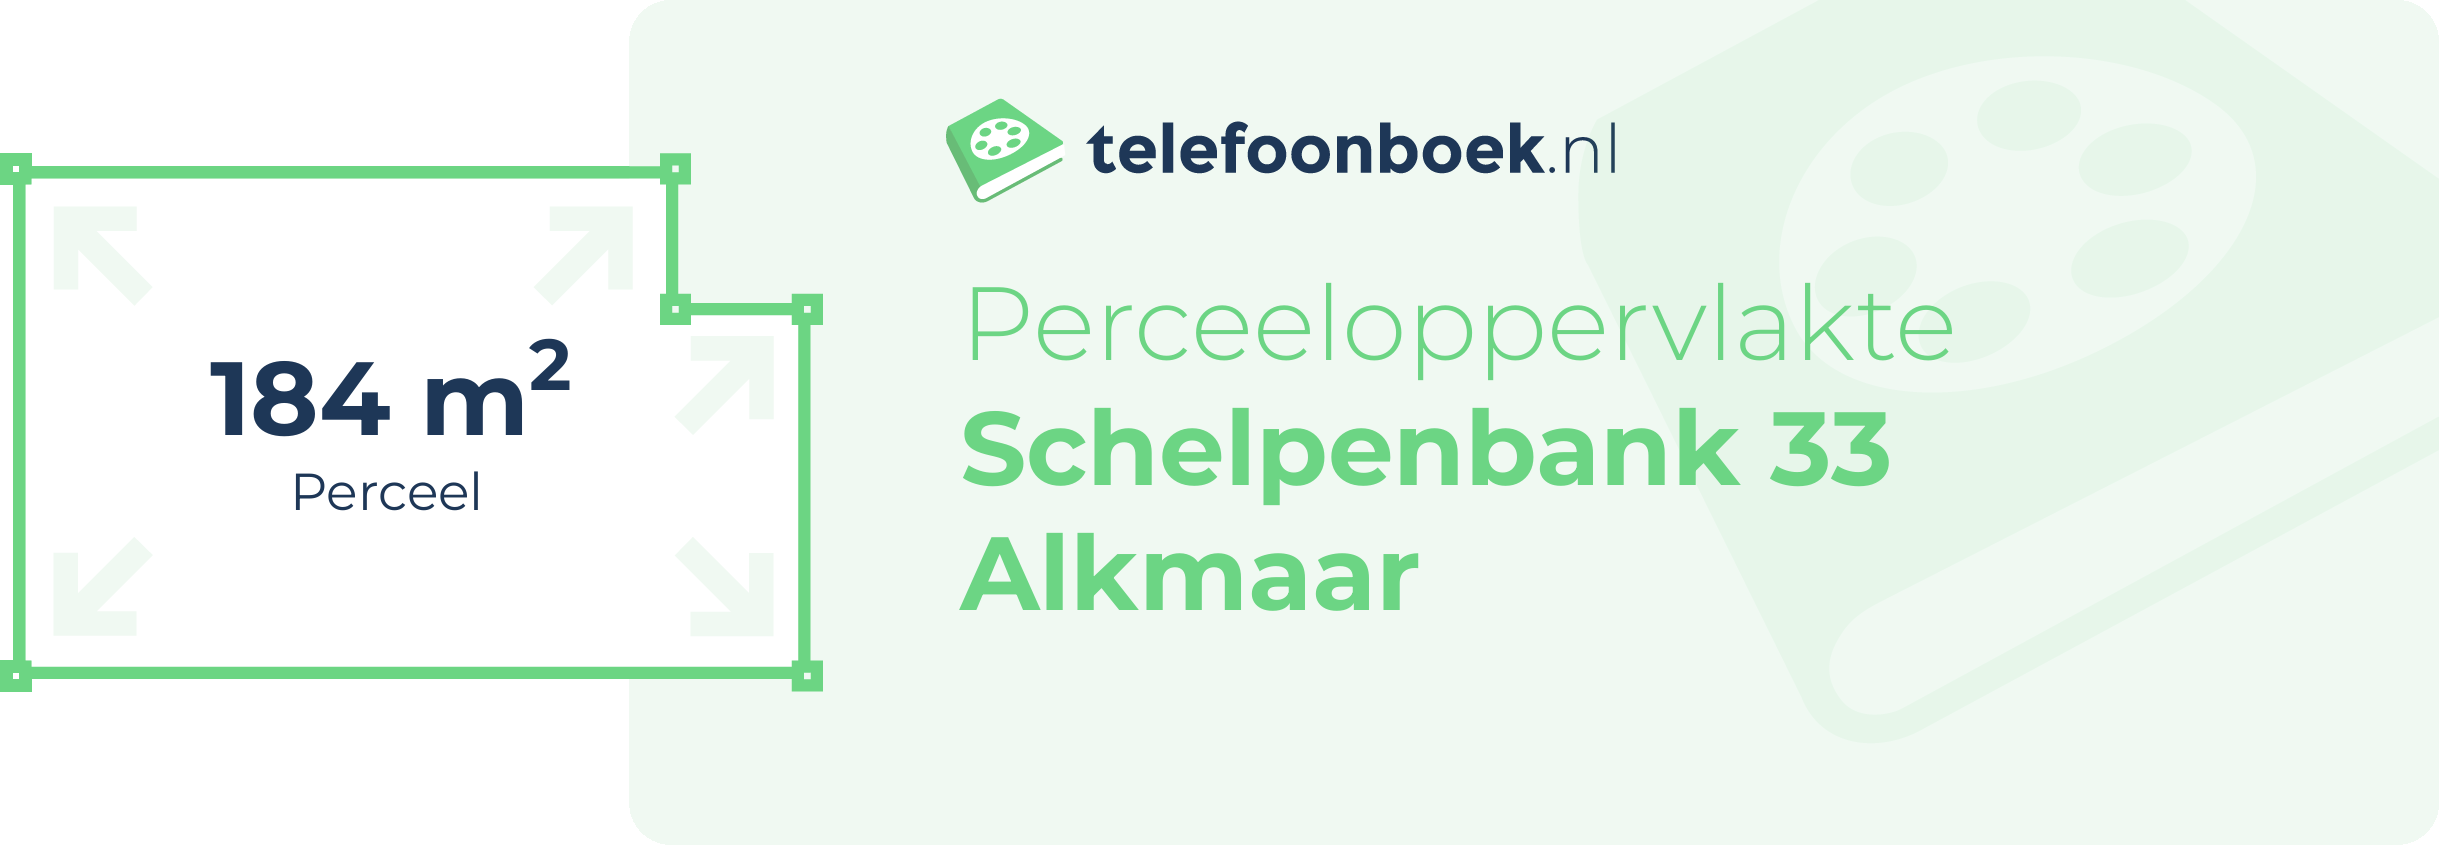 Perceeloppervlakte Schelpenbank 33 Alkmaar